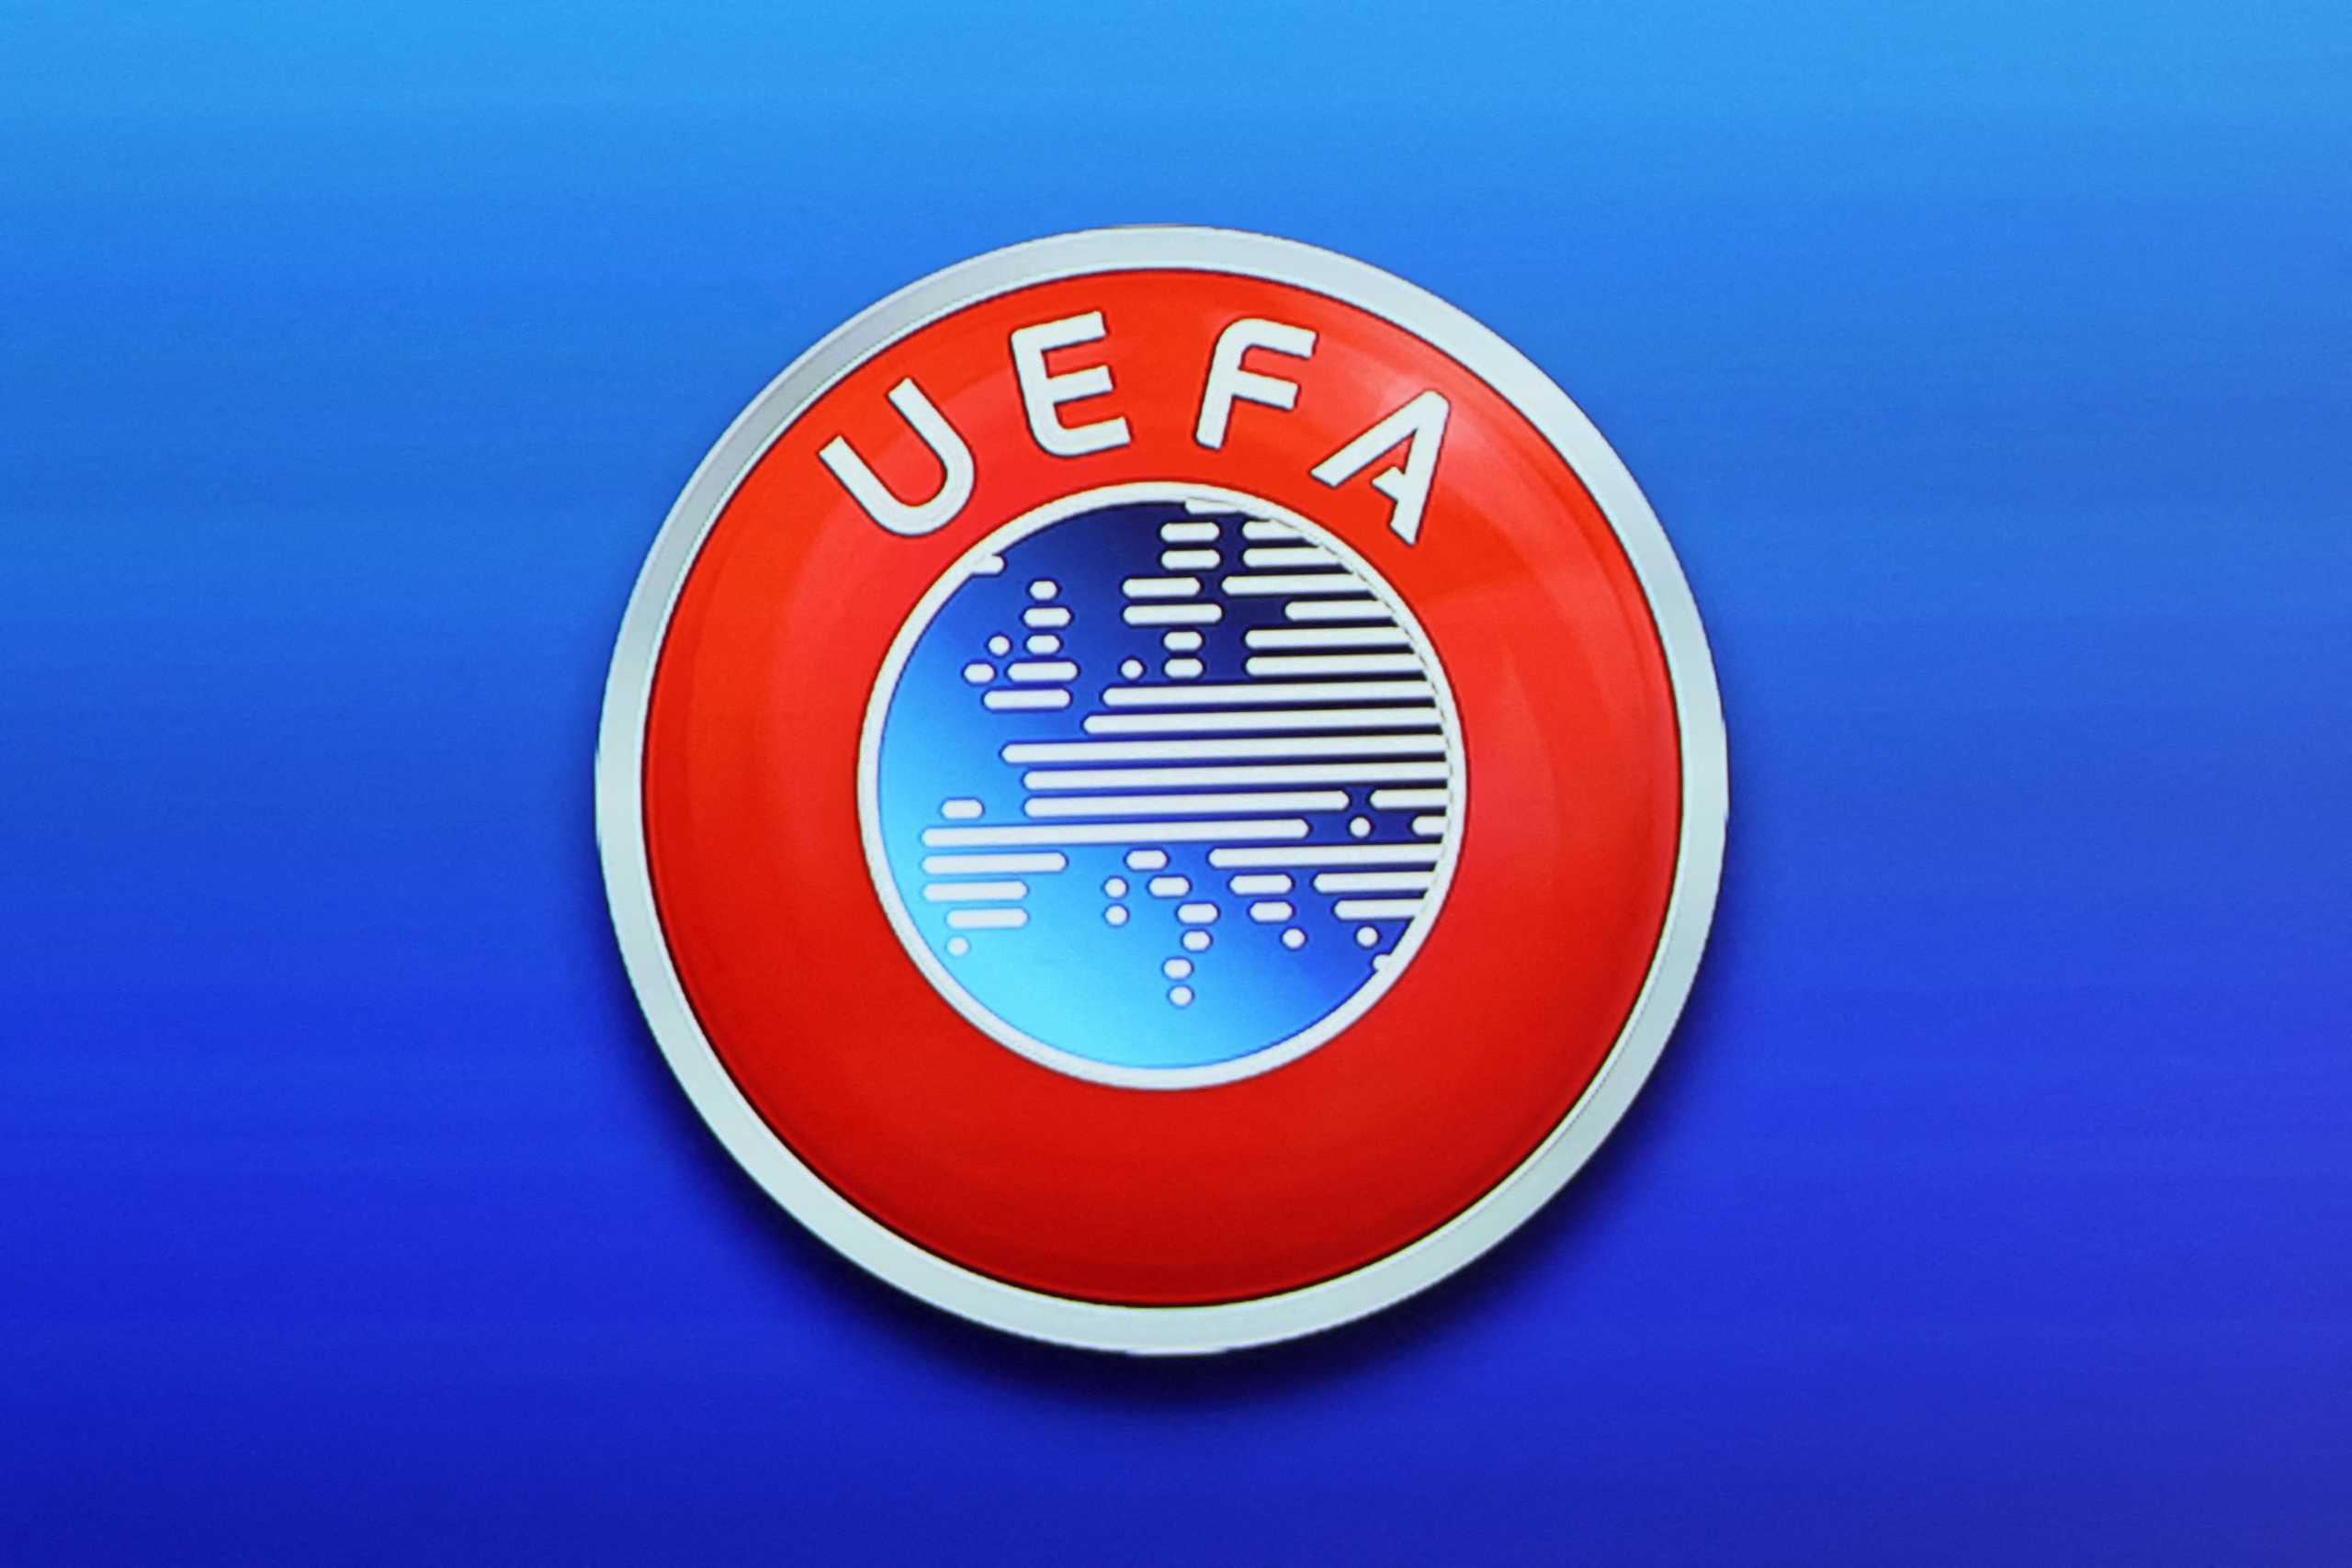 Η UEFA απέκλεισε τη Ρωσία από όλες τις διοργανώσεις της